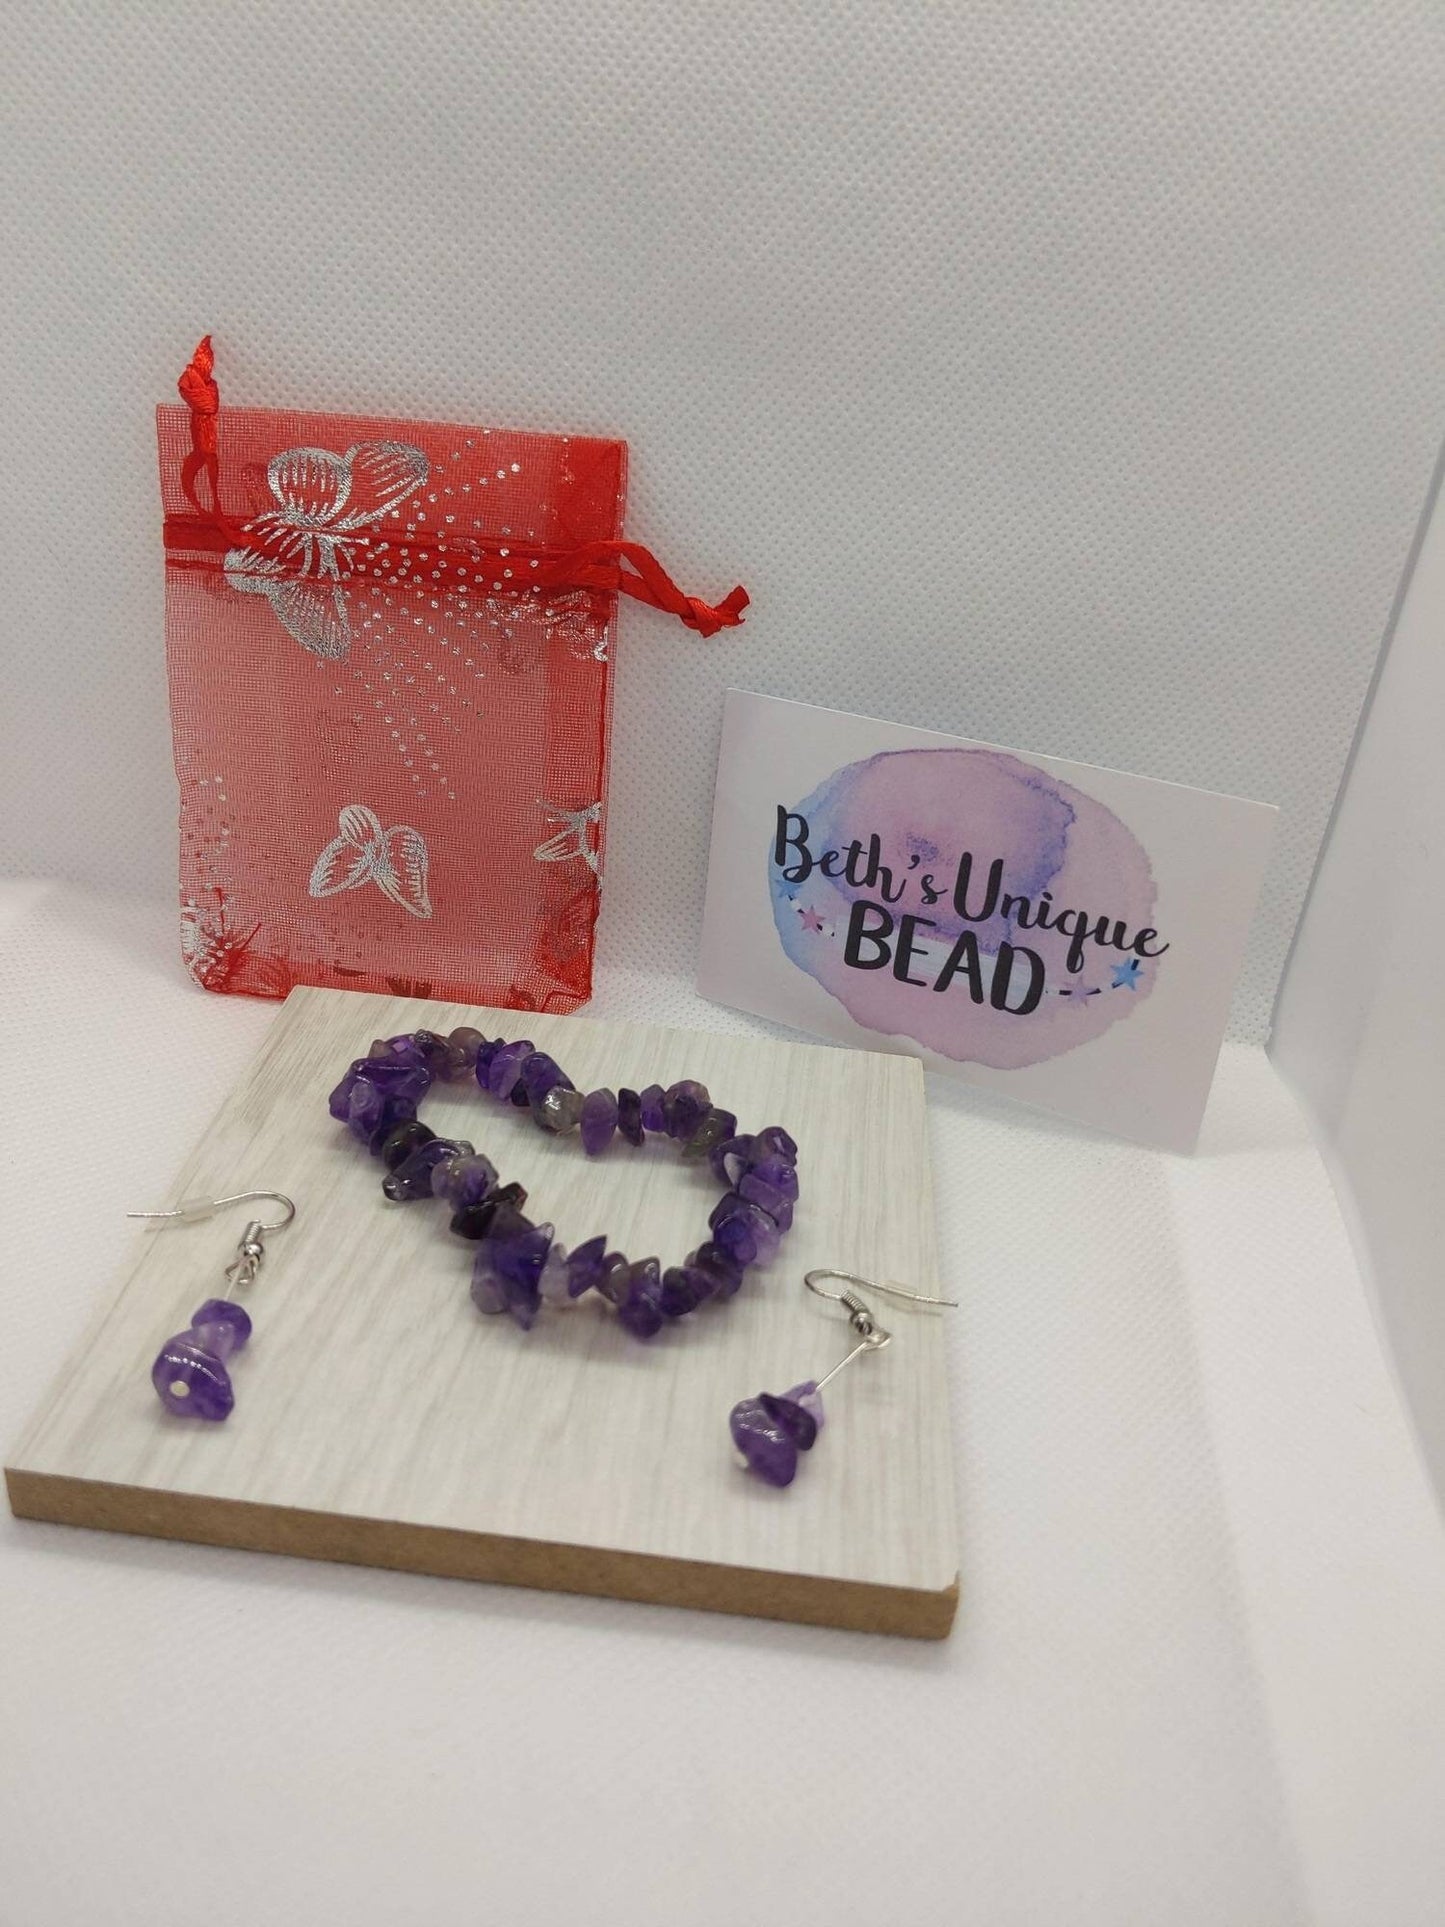 Amethyst earrings, Amethyst bracelet, February birthday, February birthstone, chip bracelet